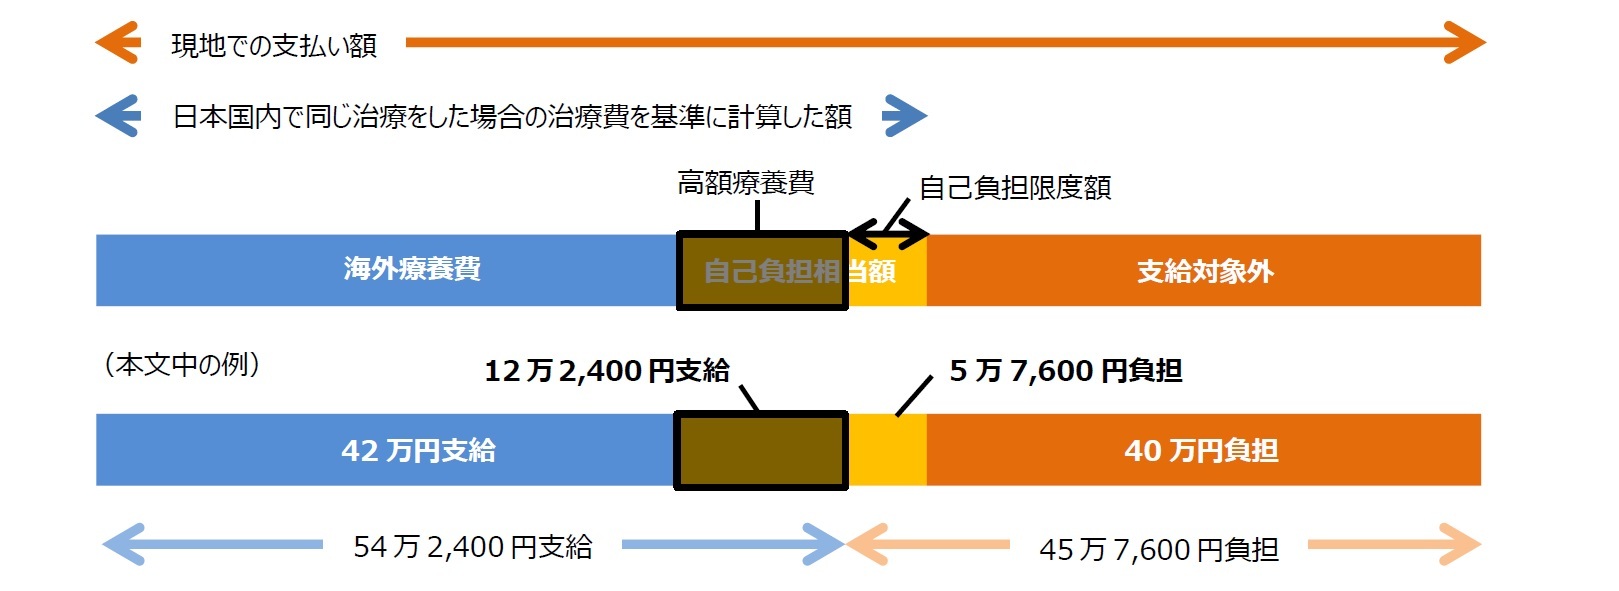 日本国内で同じ治療をした場合の治療費を基準に計算した額